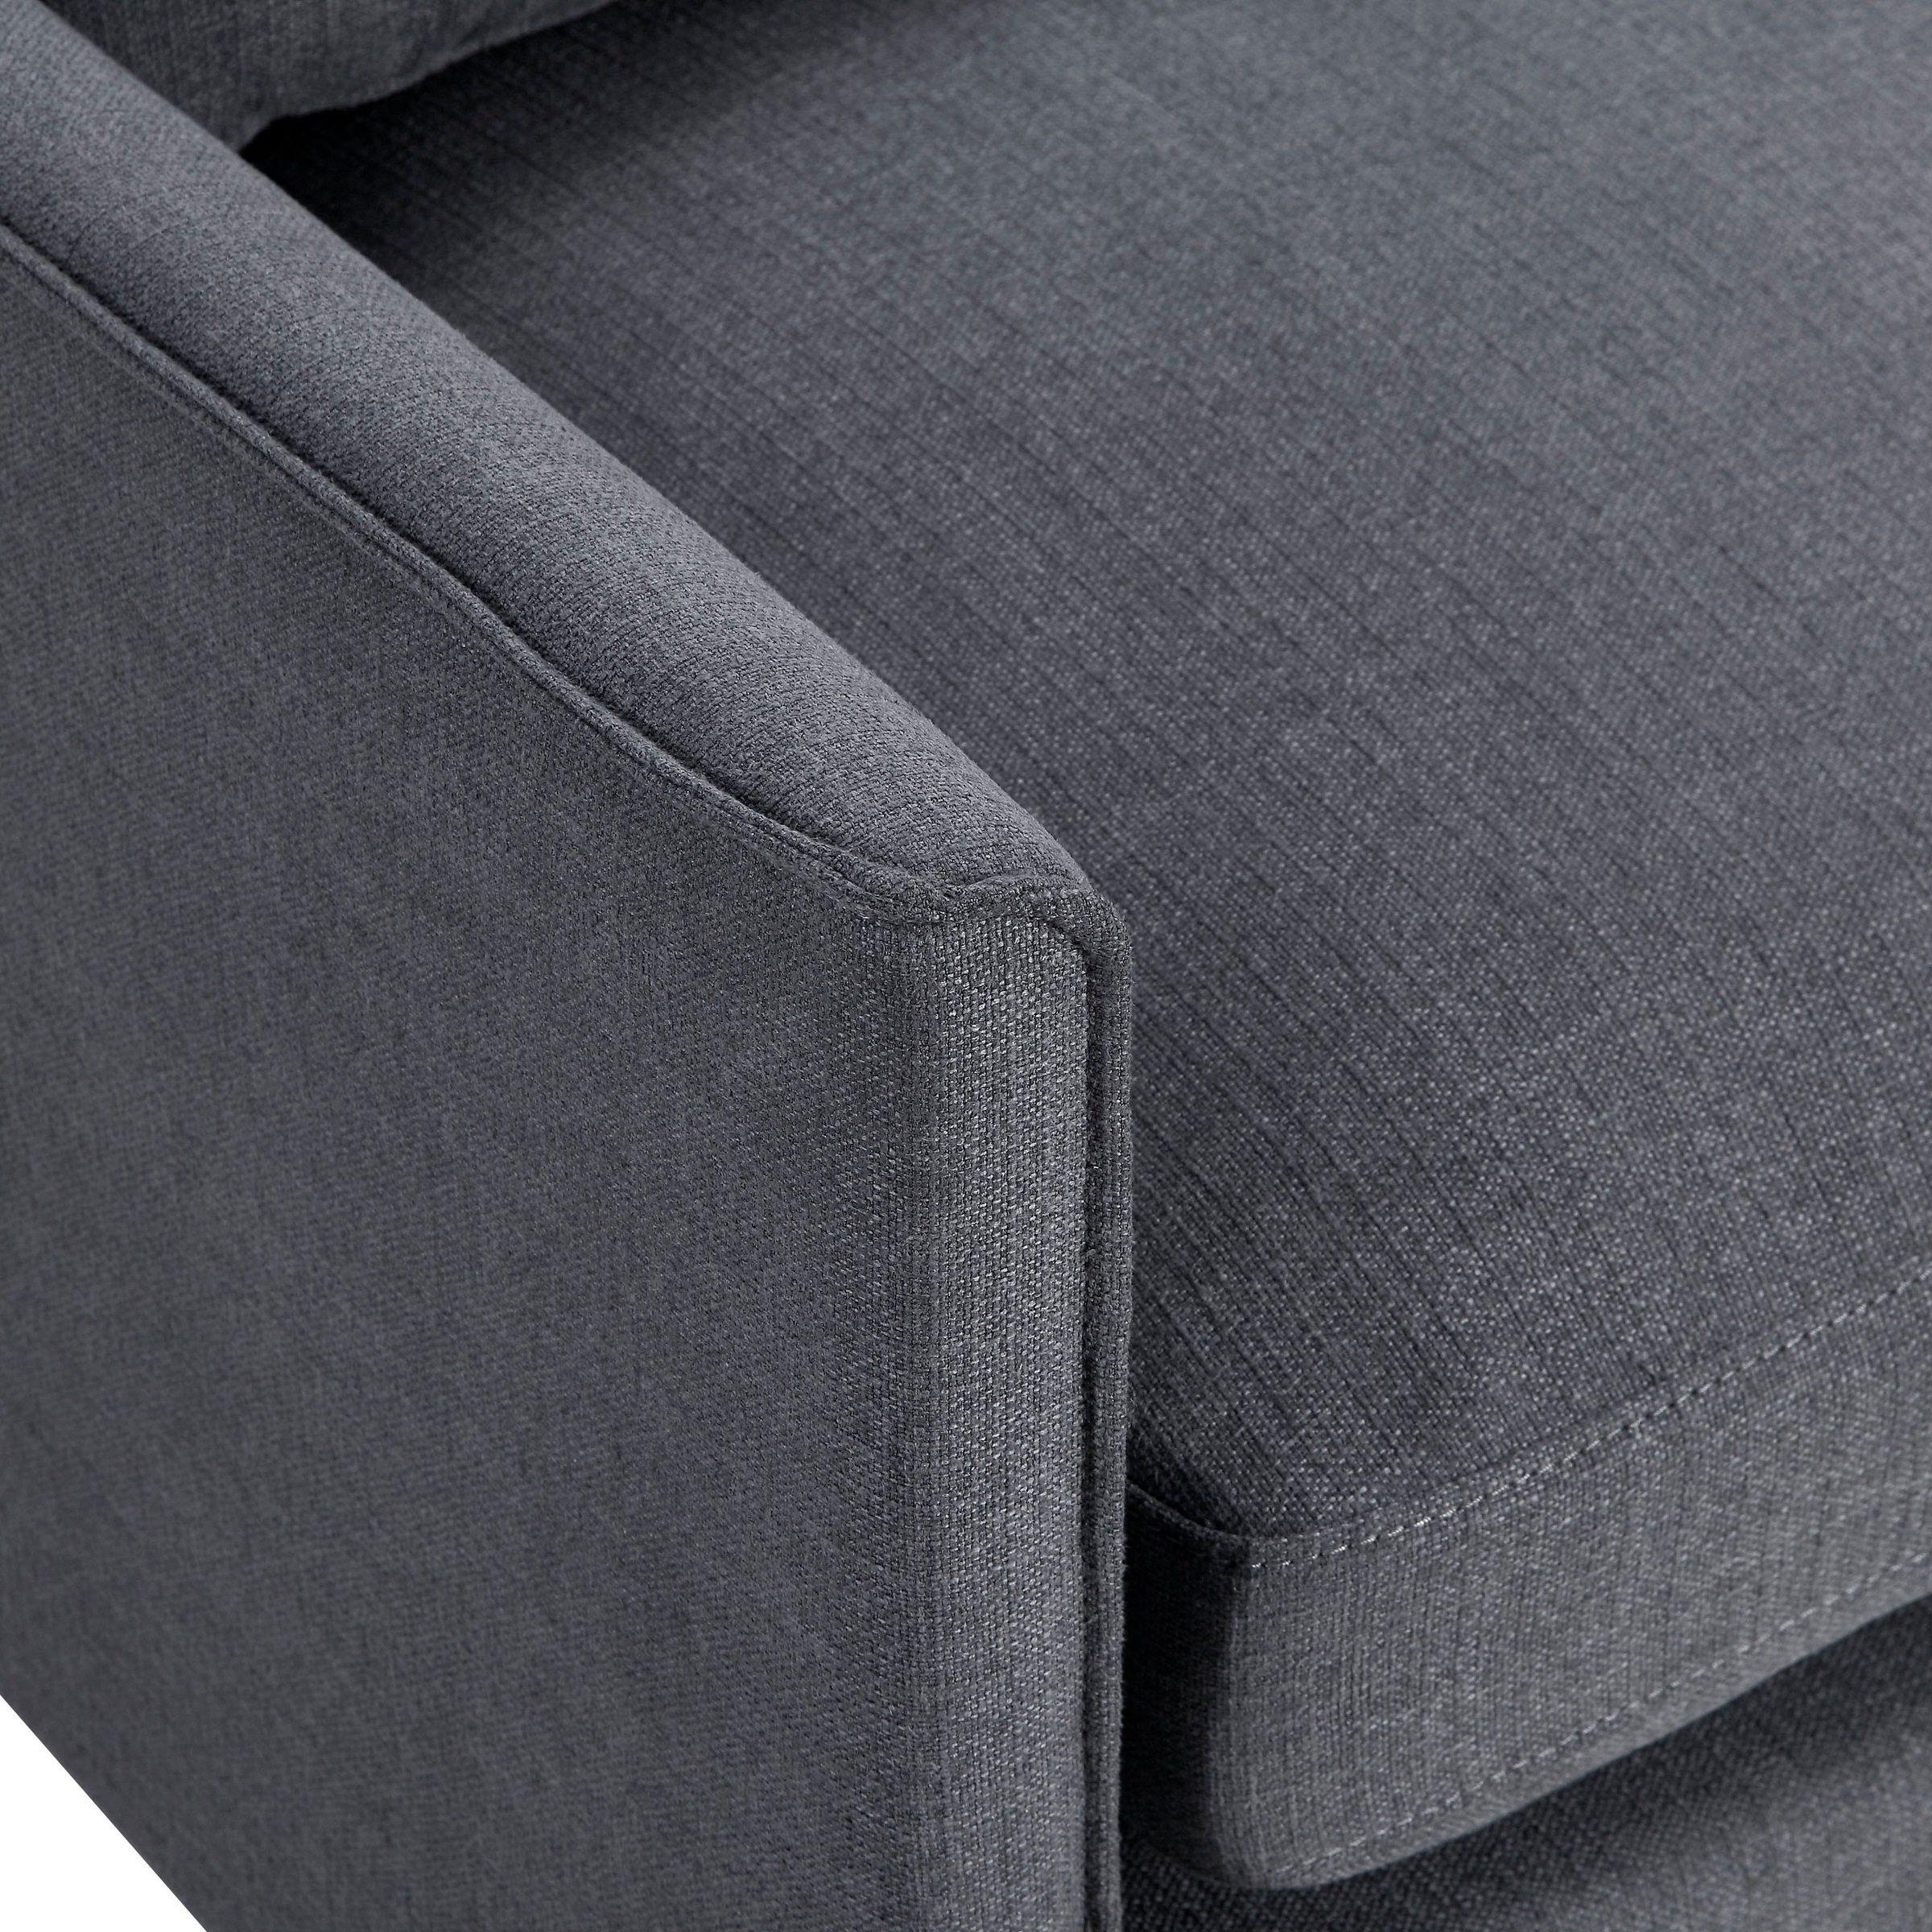 ATLANTIC home collection 3-Sitzer, Sofa, skandinvisch im Design, extra  weich, Füllung mit Federn versandkostenfrei auf